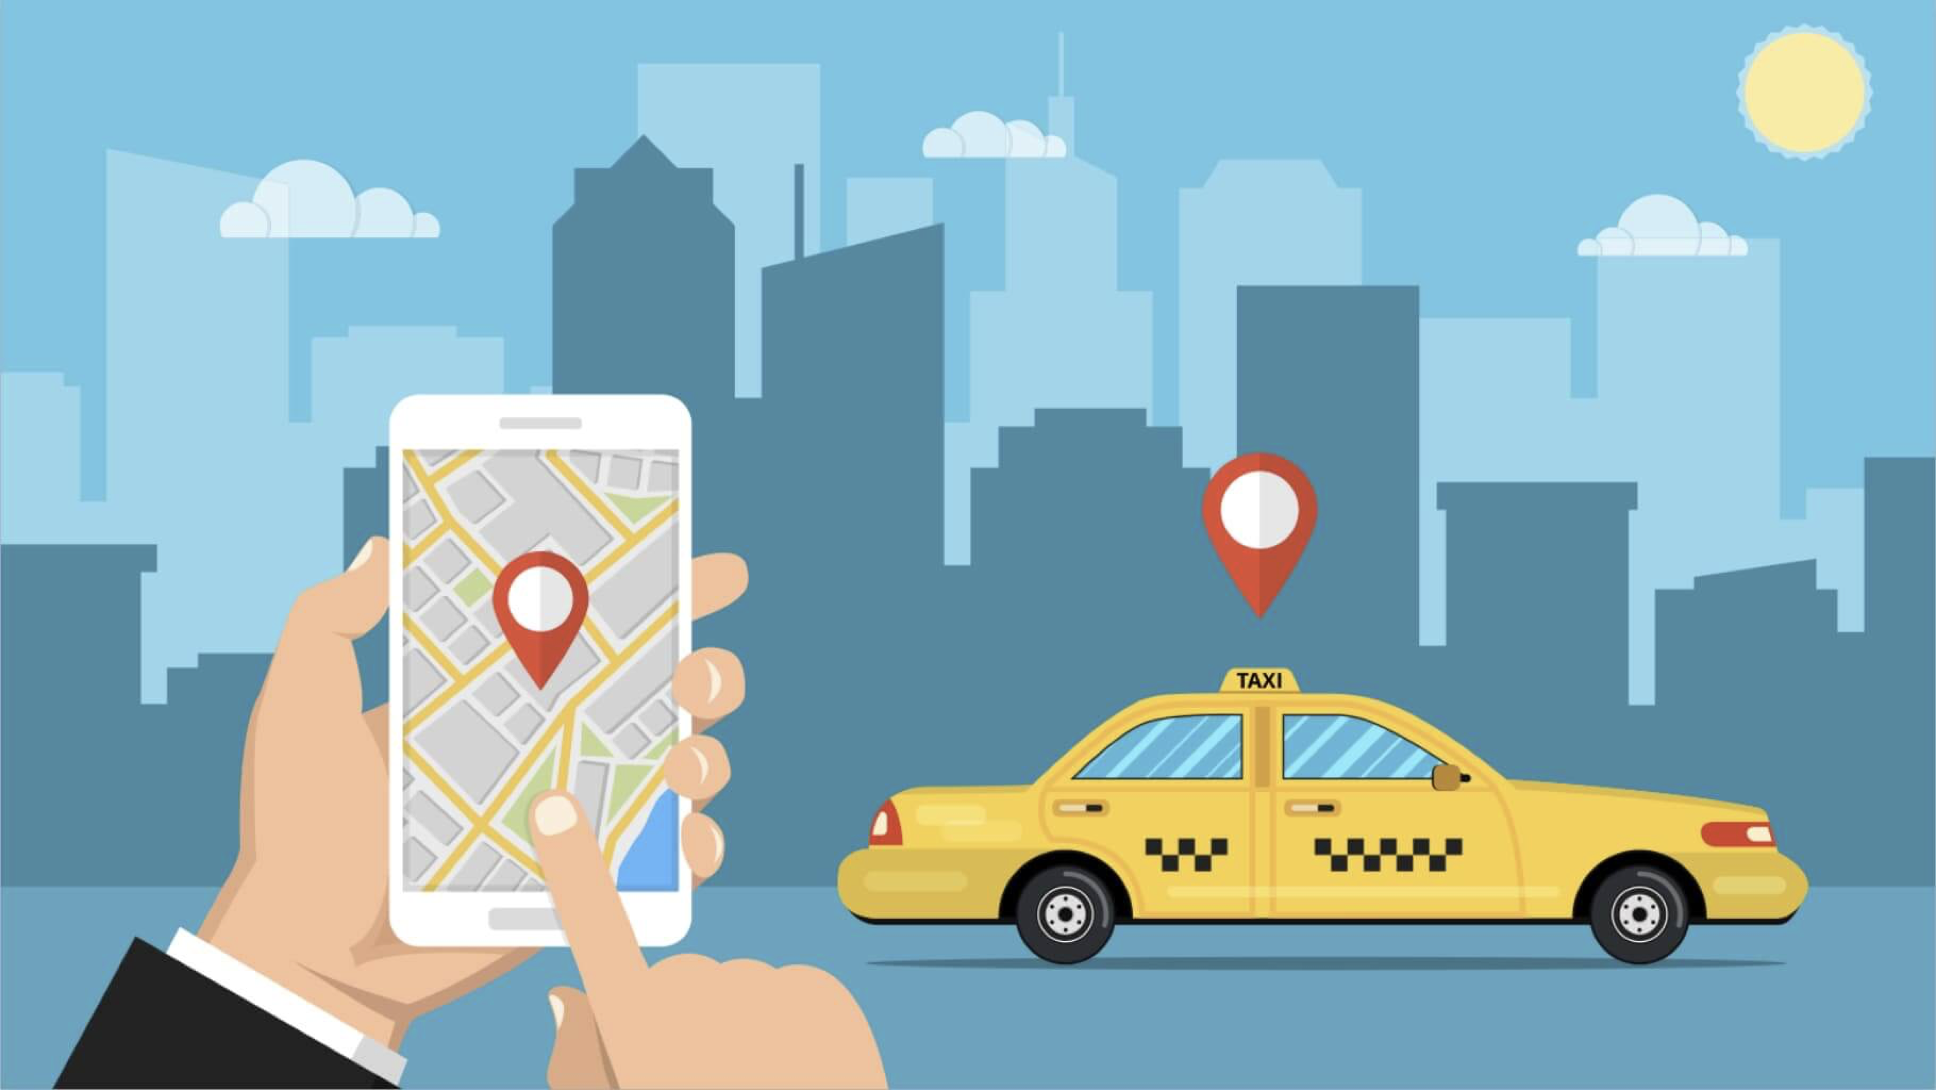 山口で使えるタクシーアプリとクーポン情報